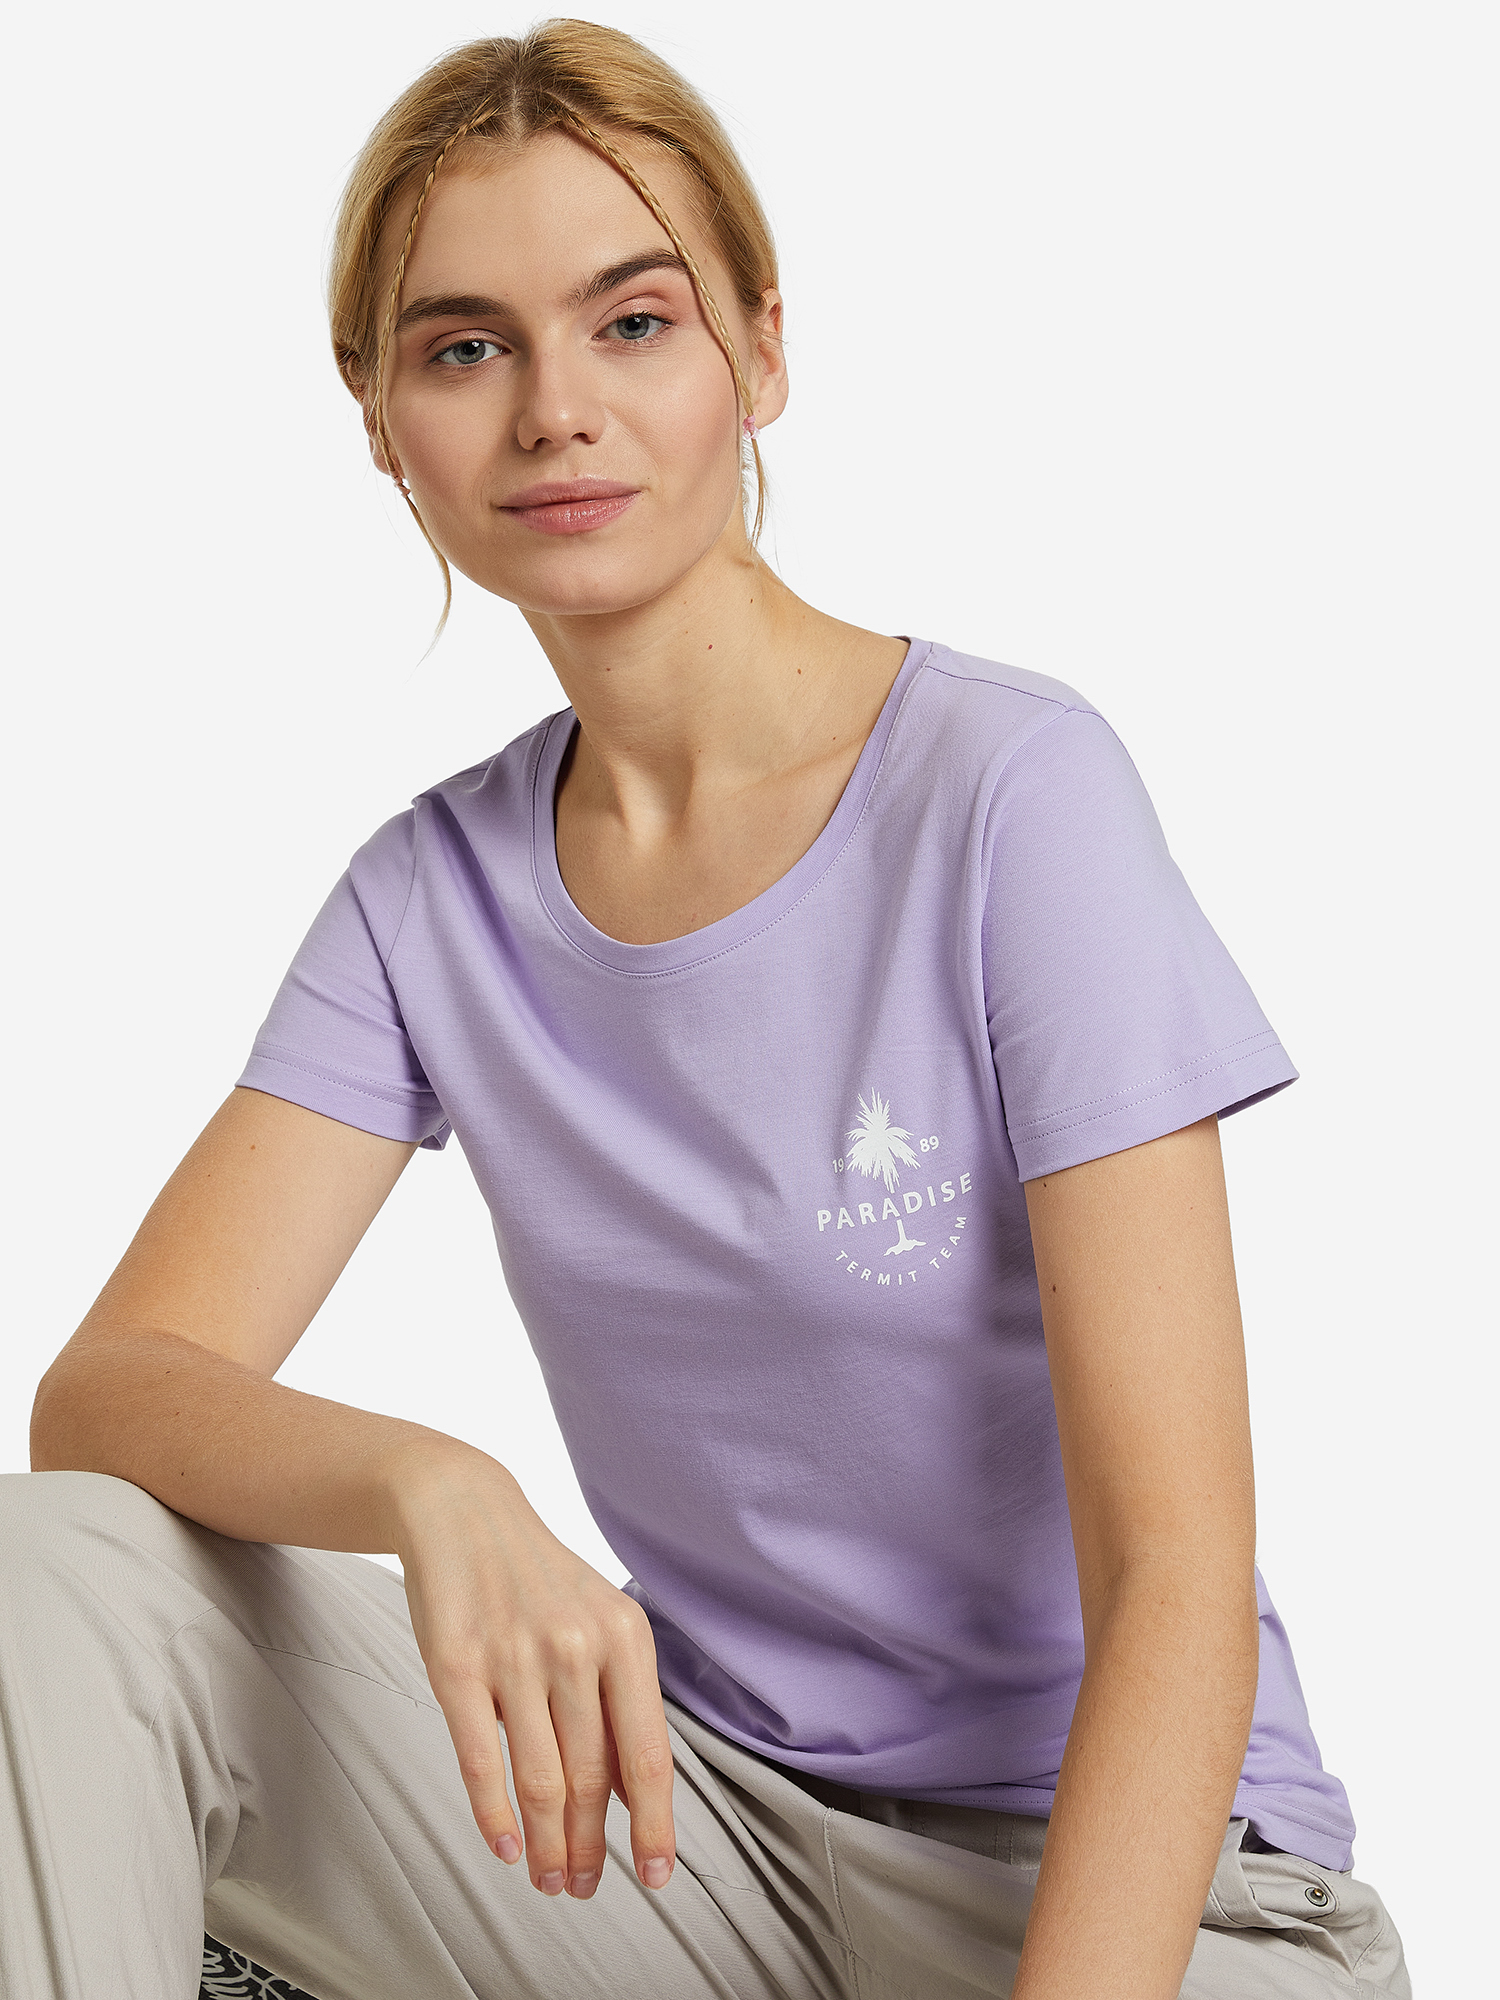 Футболка женская Termit, Фиолетовый футболка женская облегающая оттенка манго